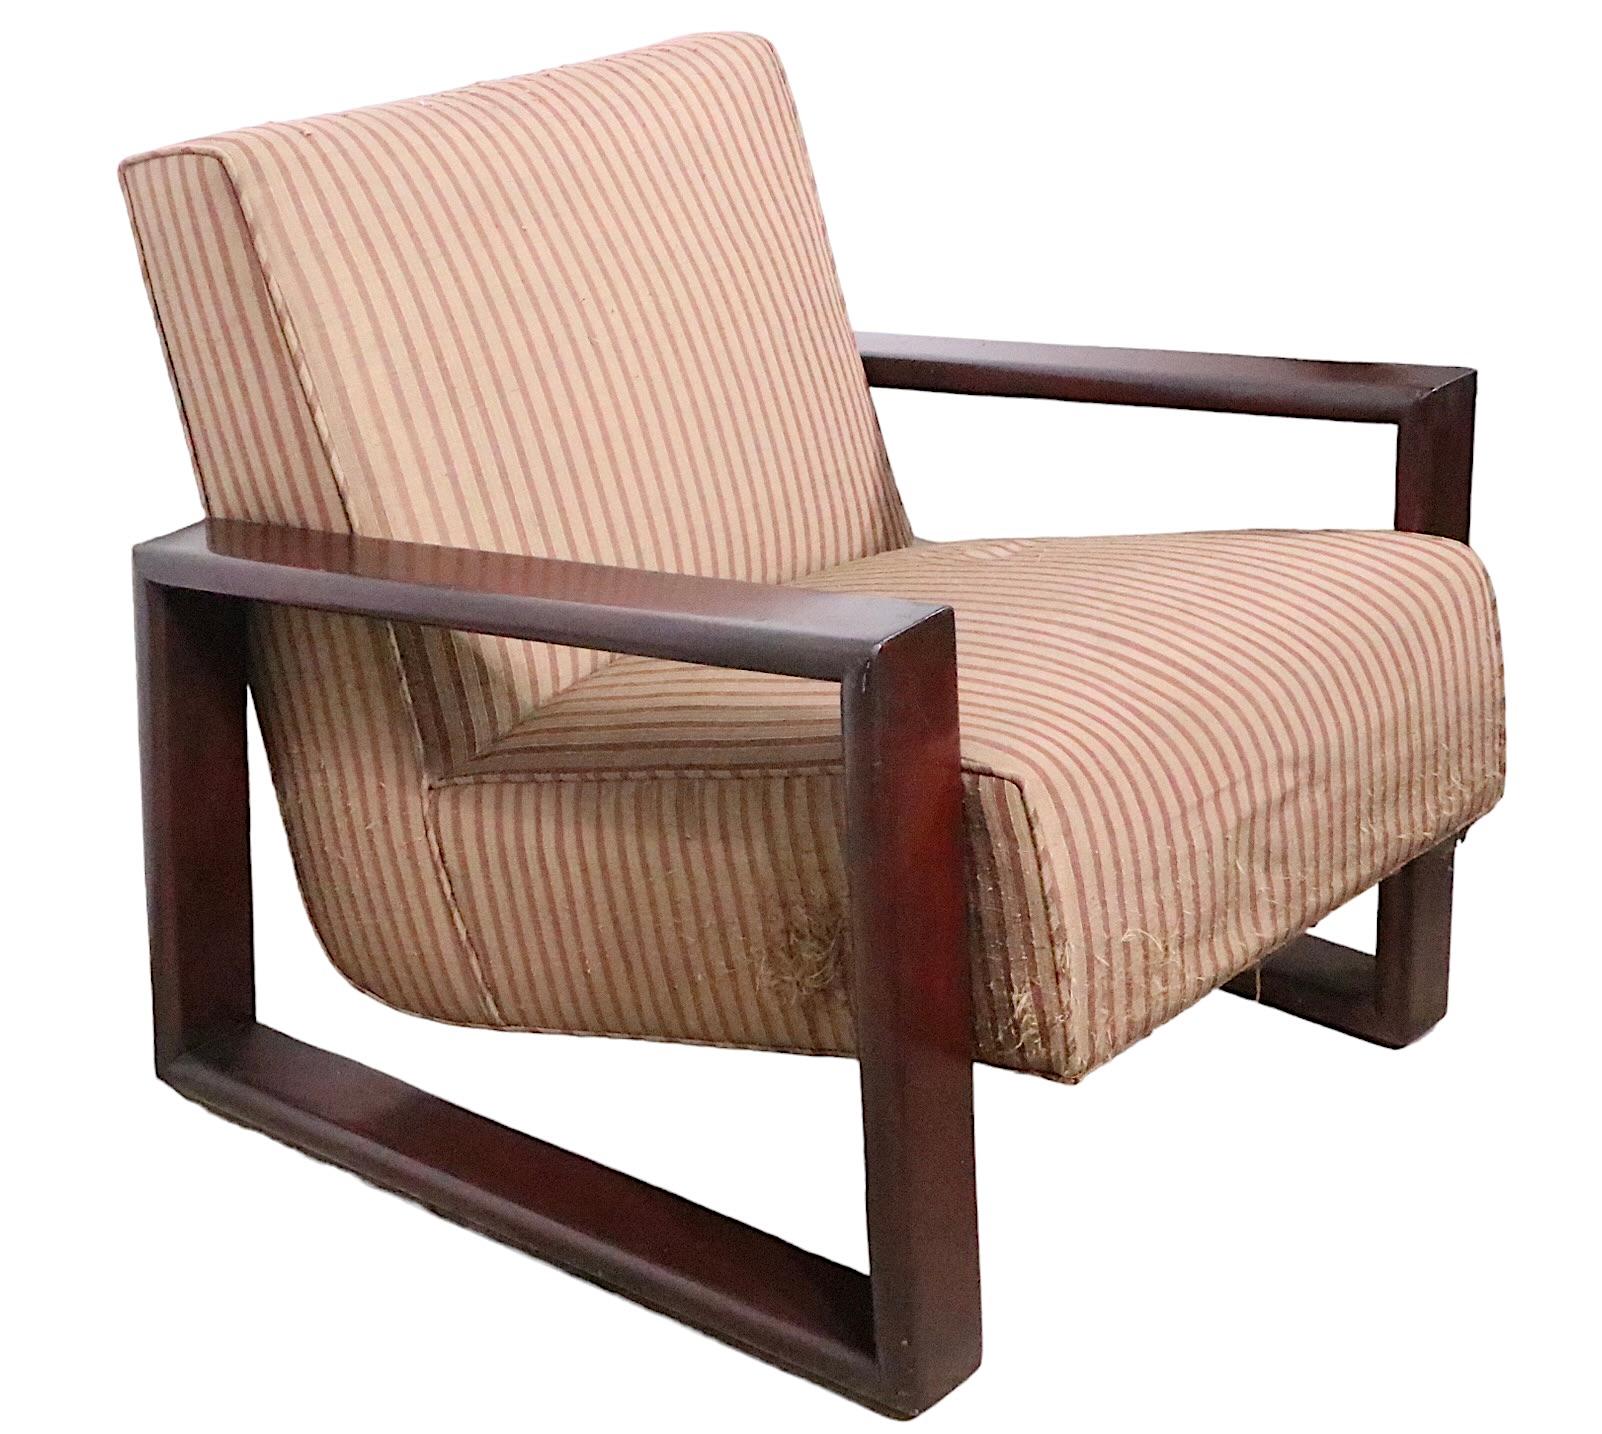 Paire de chaises longues de haut style, avec un design architectural.  Structure ouverte et continue des accoudoirs et des pieds, qui soutient l'assise et le dossier rembourrés. Les chaises sont structurellement saines et robustes, mais elles